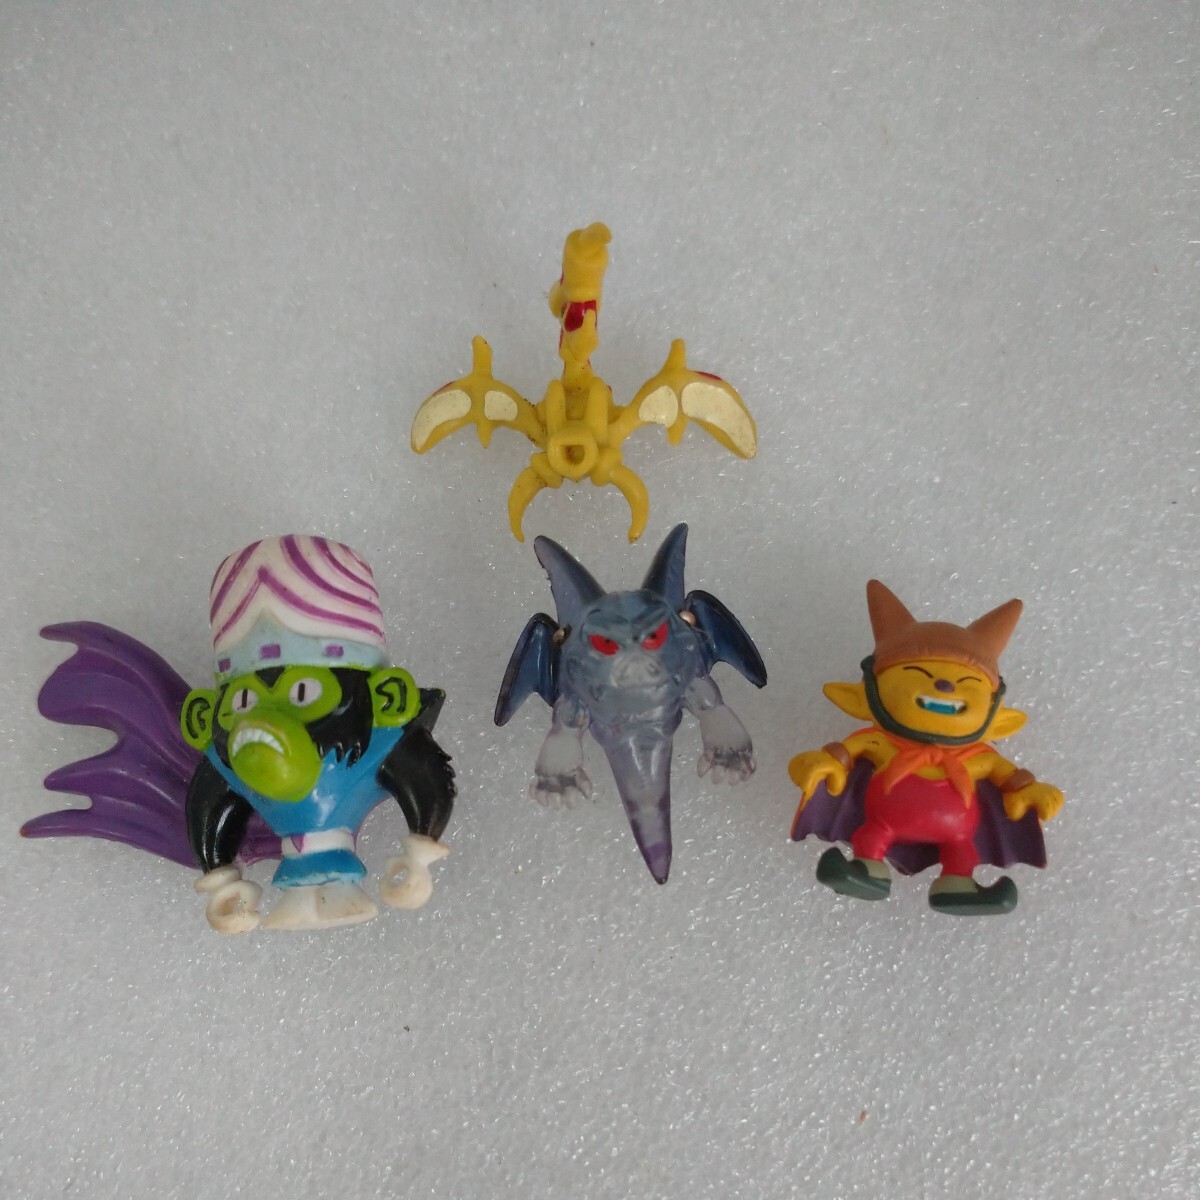 [ set sale ] Dragon Quest other miniature figure toy ornament 